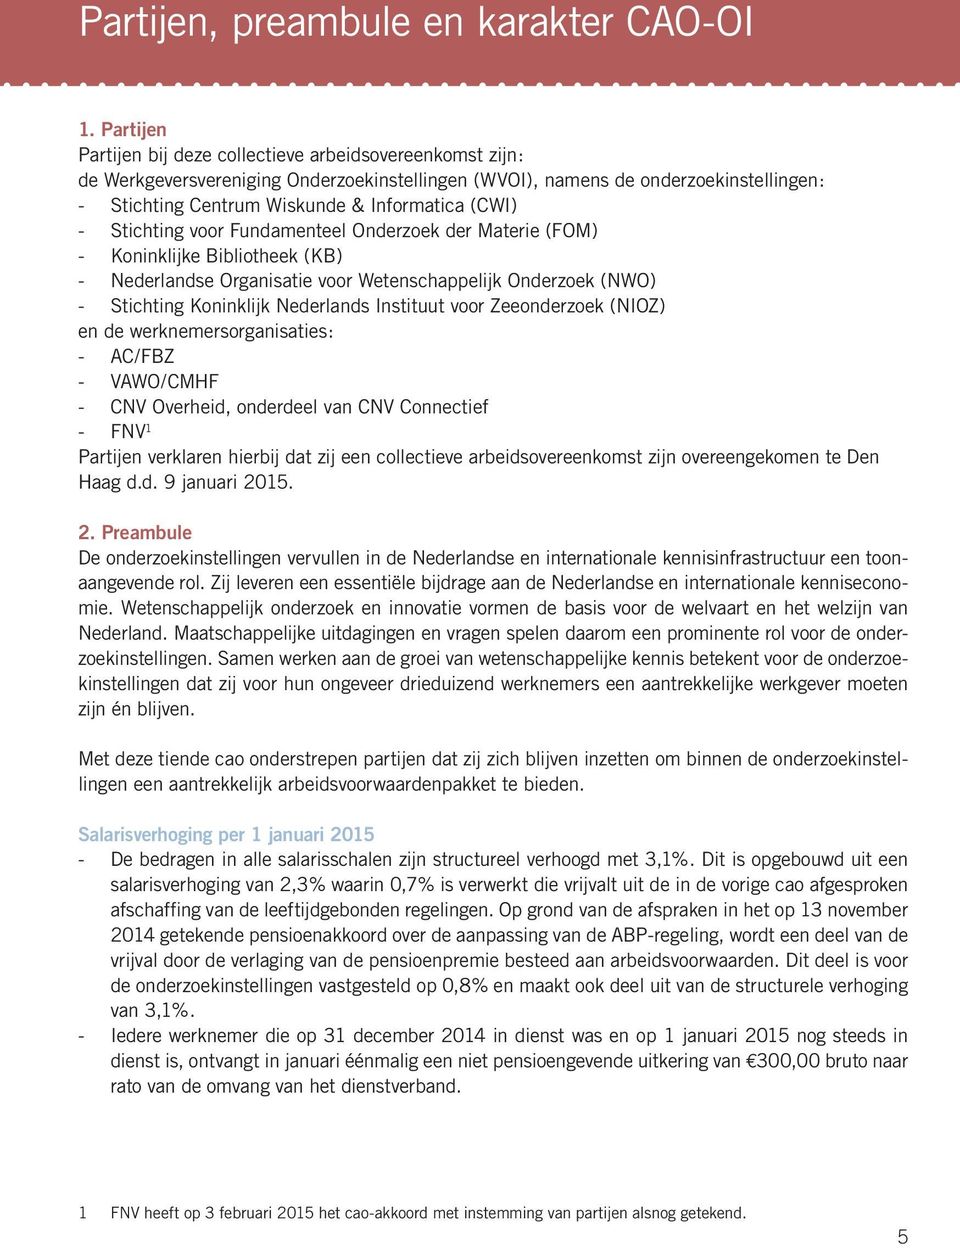 (CWI) - Stichting voor Fundamenteel Onderzoek der Materie (FOM) - Koninklijke Bibliotheek (KB) - Nederlandse Organisatie voor Wetenschappelijk Onderzoek (NWO) - Stichting Koninklijk Nederlands